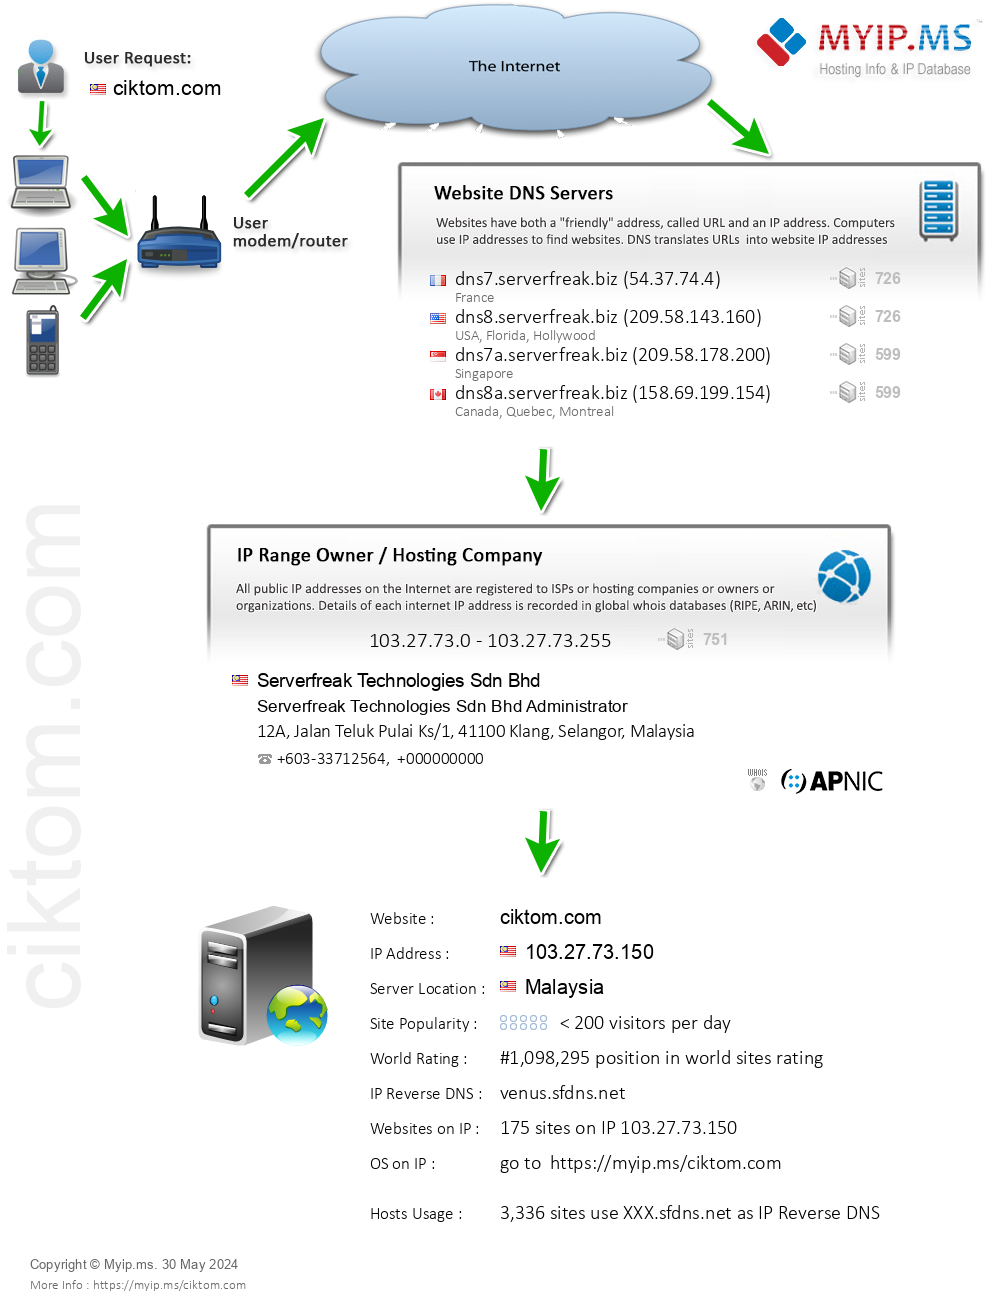 Ciktom.com - Website Hosting Visual IP Diagram